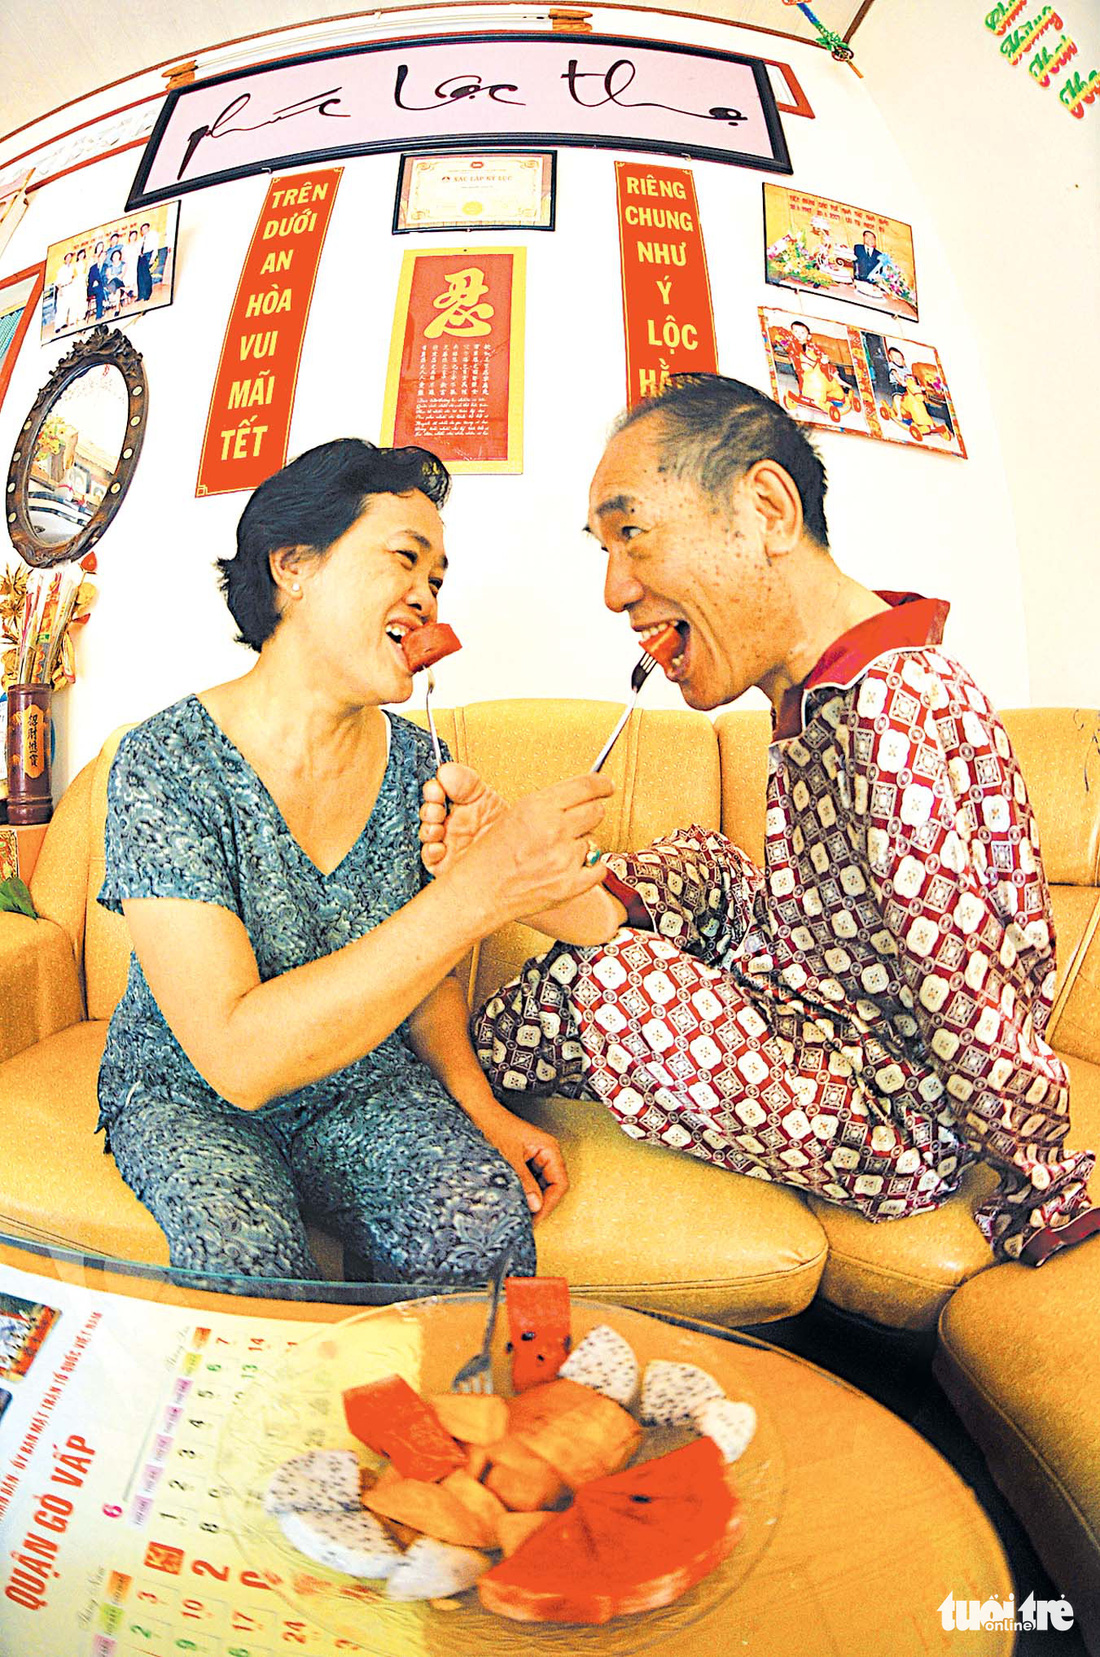 Thầy giáo Nguyễn Ngọc Ký: Hơn 60 năm là thần tượng về nghị lực sống cho nhiều thế hệ - Ảnh 2.